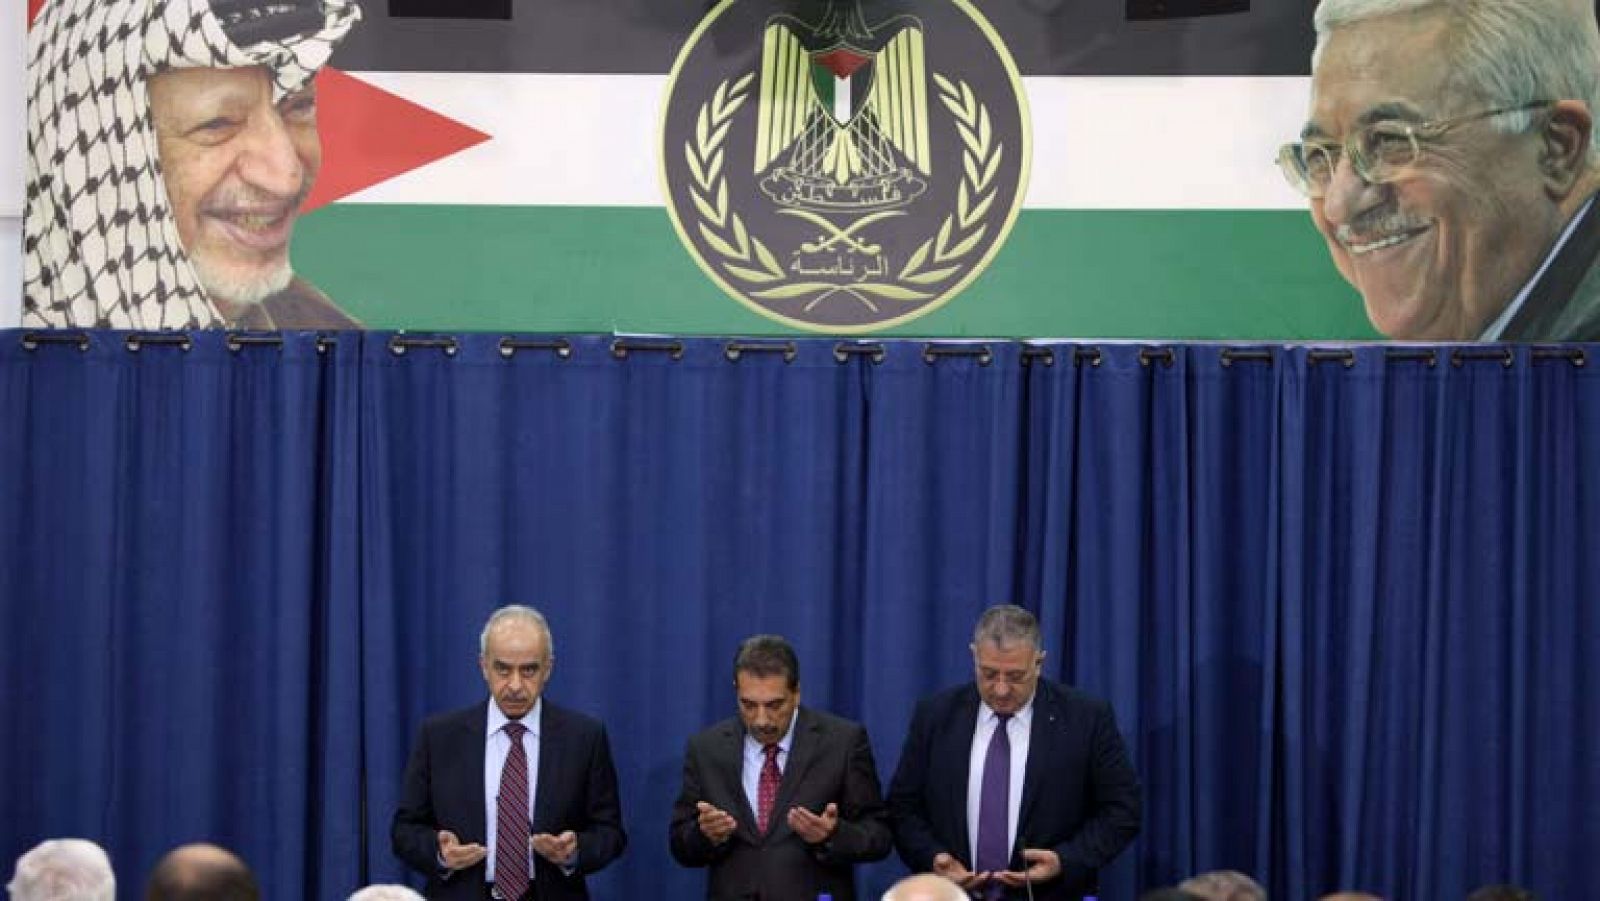 Los palestinos acusan a Israel de la muerte de Yaser Arafat 